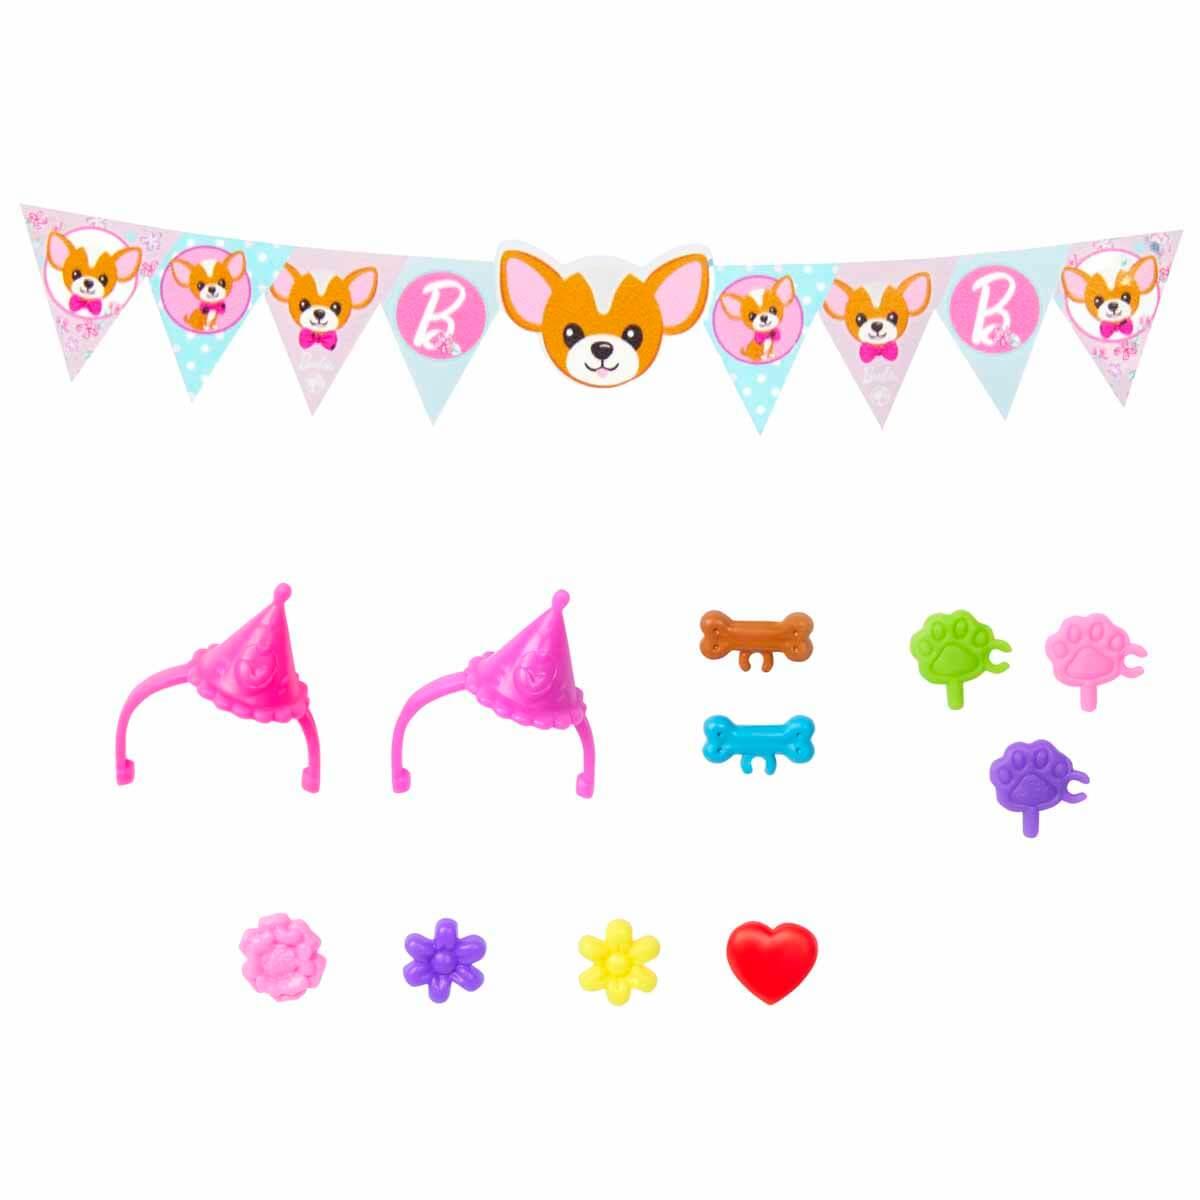 Barbie Chelsea Köpekçiğin Doğum Günü Oyun Seti HJY88 | Toysall